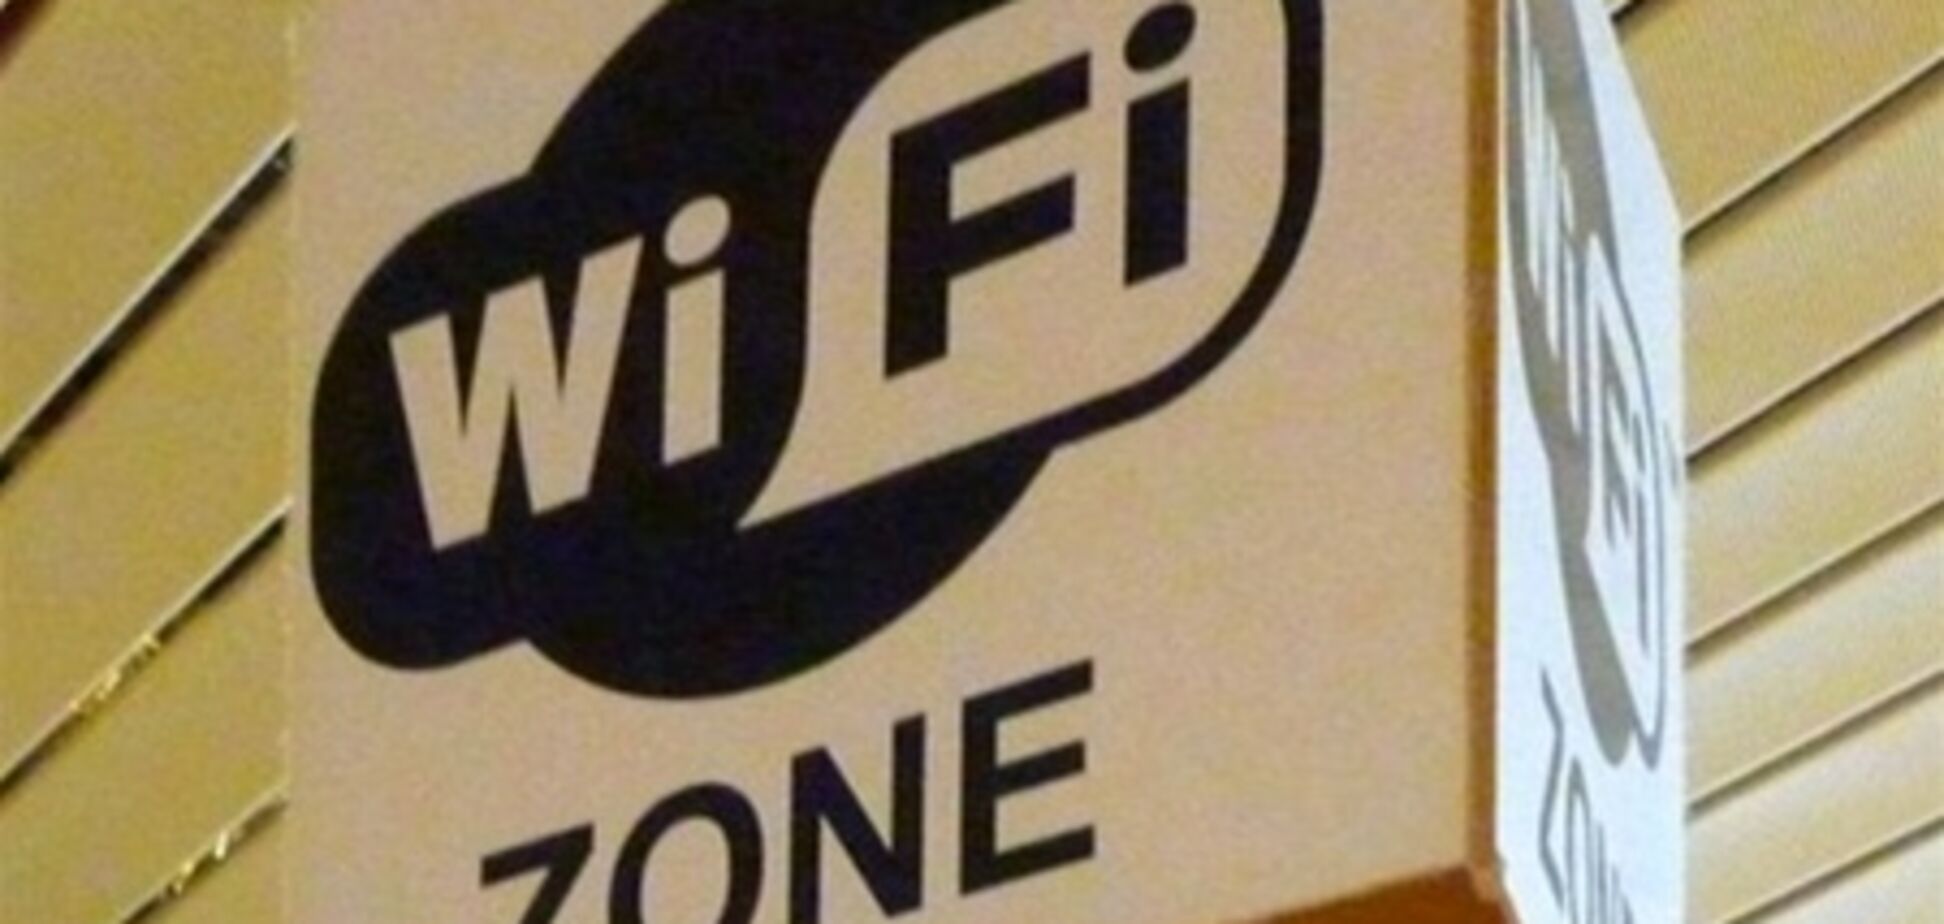 В Киеве появится бесплатный Wi-Fi